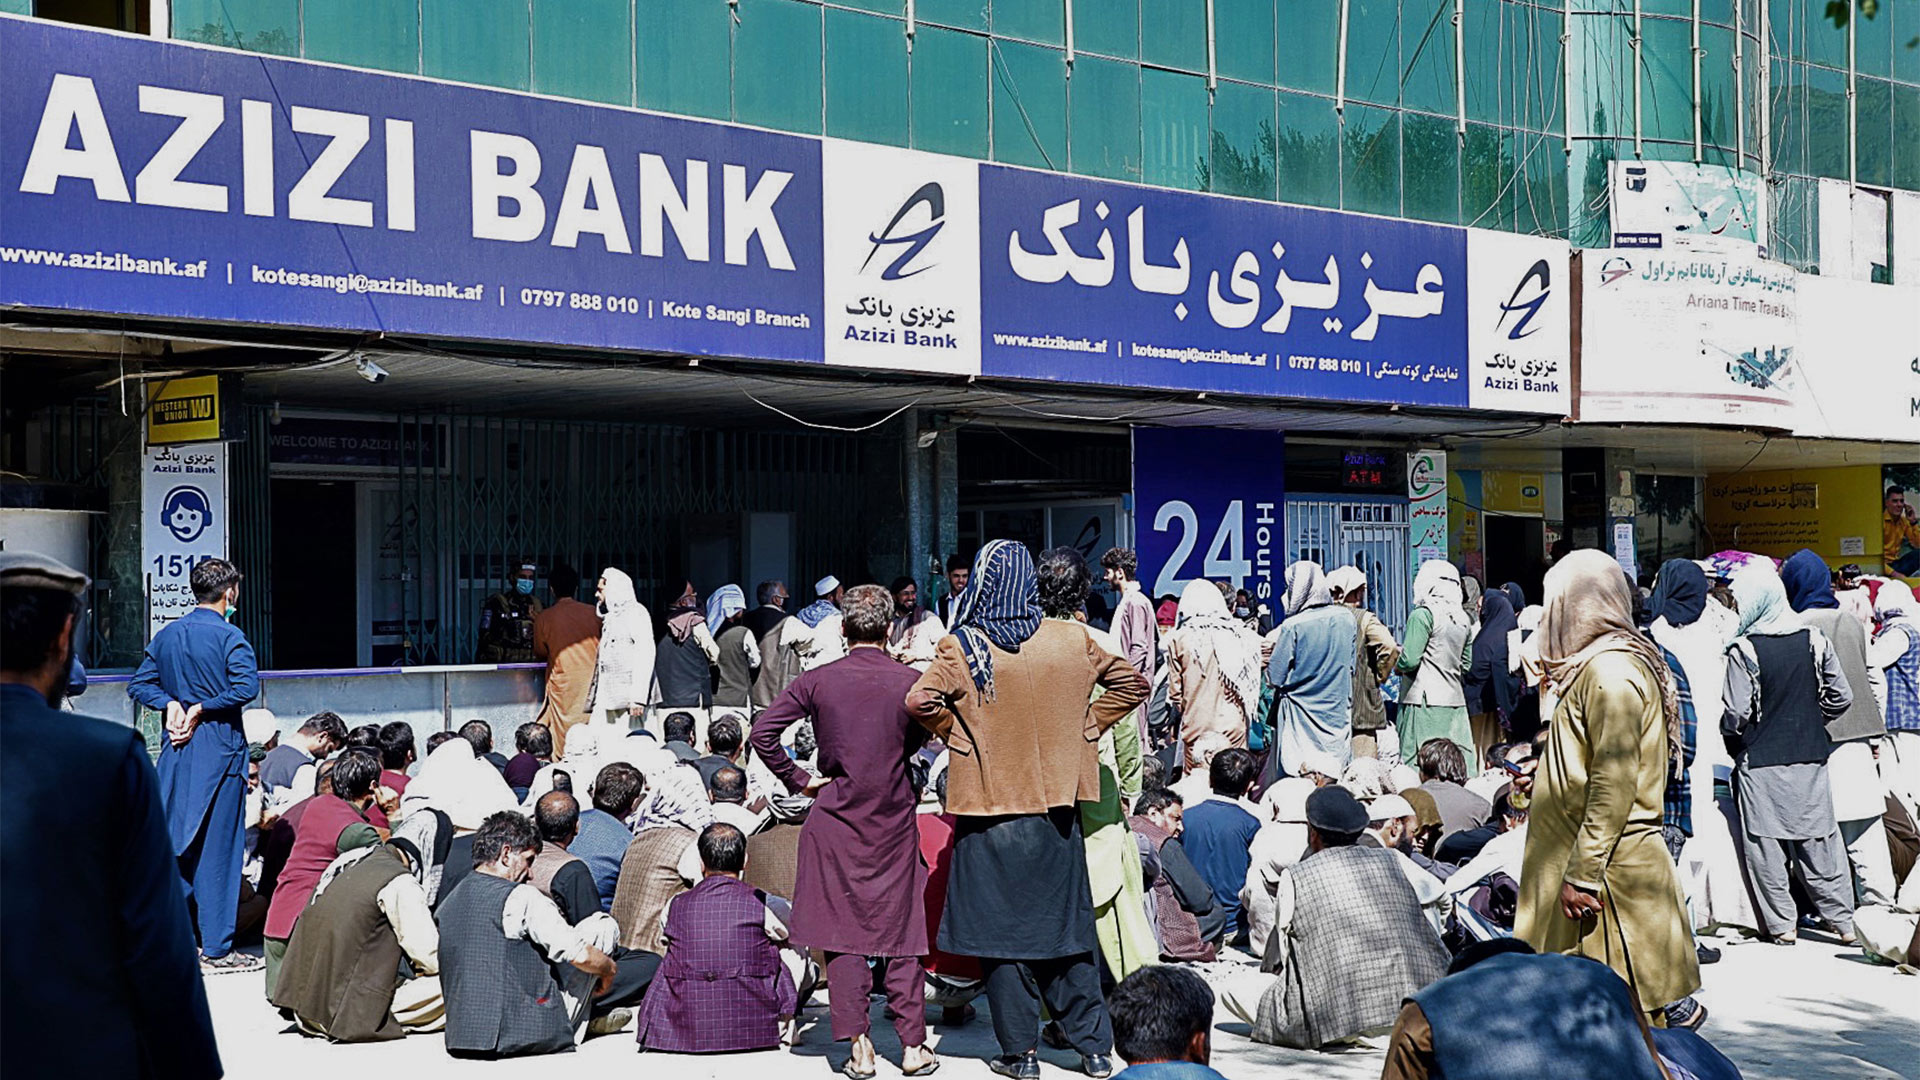 UN warnen vor Kollaps der Banken in Afghanistan